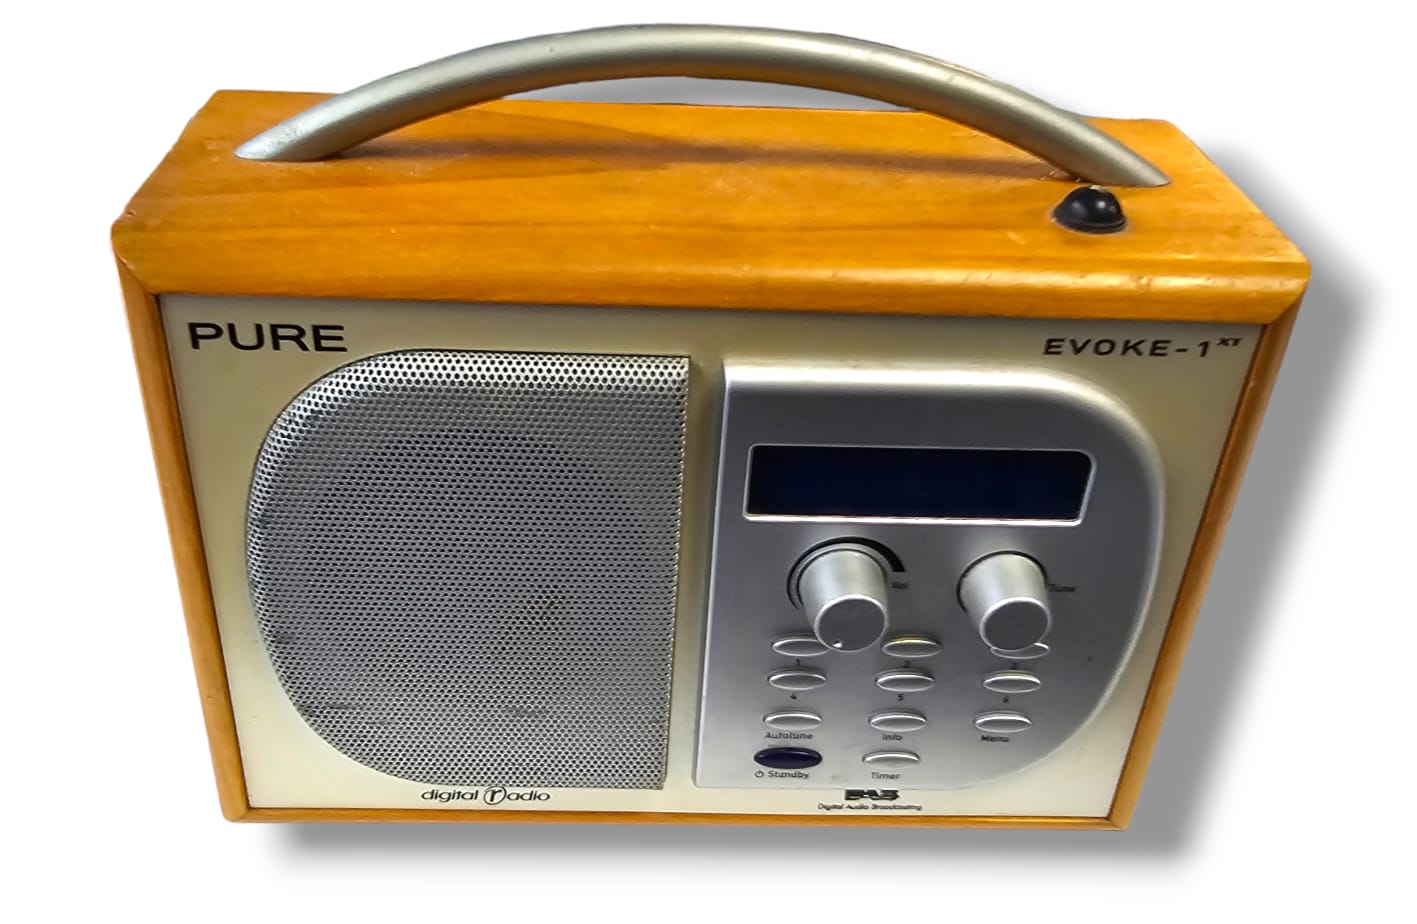 Pure Evoke -1 xt DAB radio